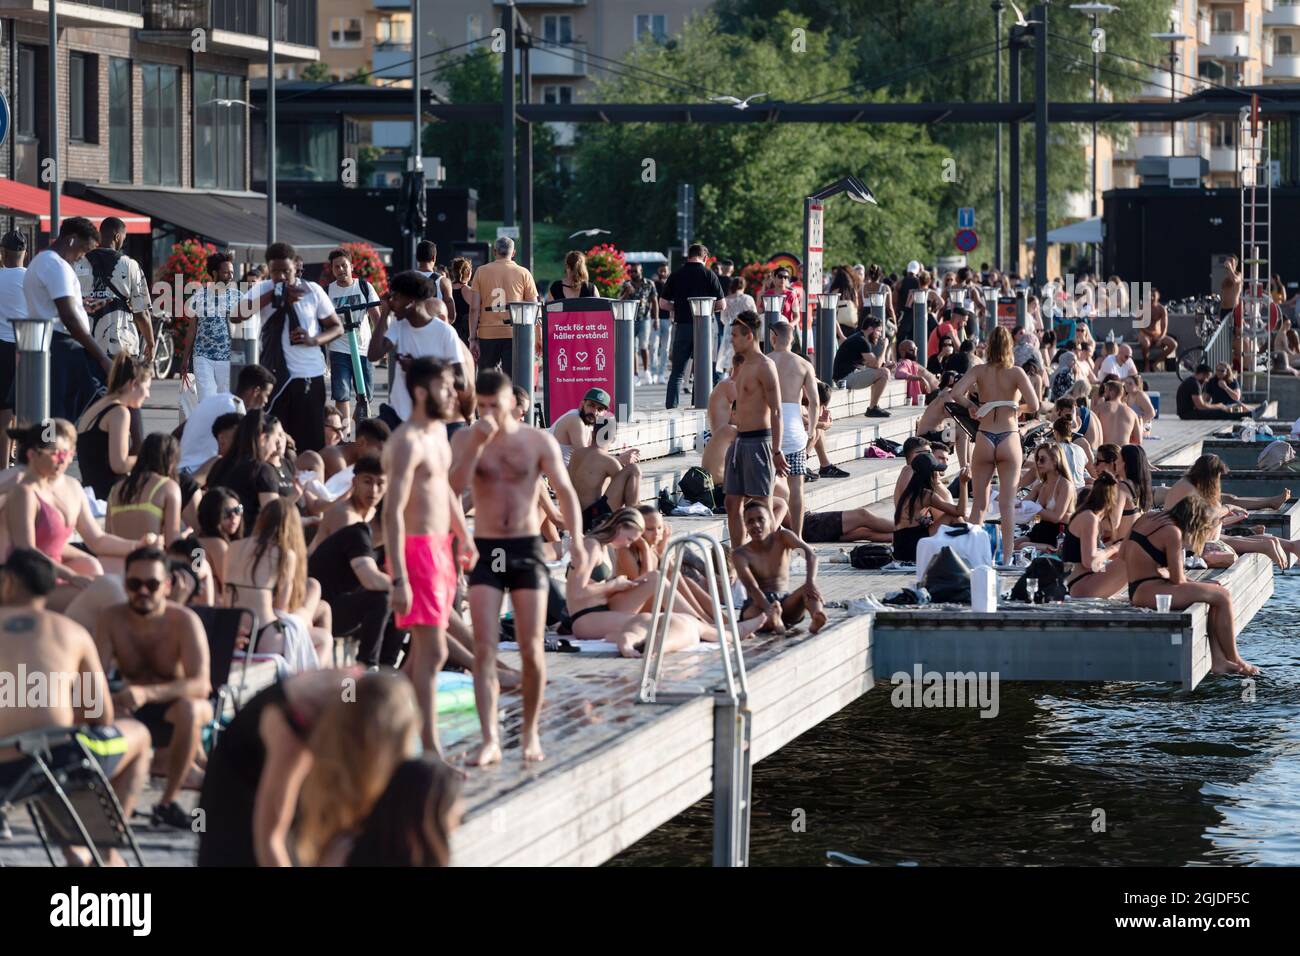 Les gens apprécient la soirée balmy sur un quai après une journée où les températures ont atteint 30 degrés C, à Stockholm, Suède, le 24 juin 2020. Photo: Stina Stjernkvist / TT code 11610 Banque D'Images